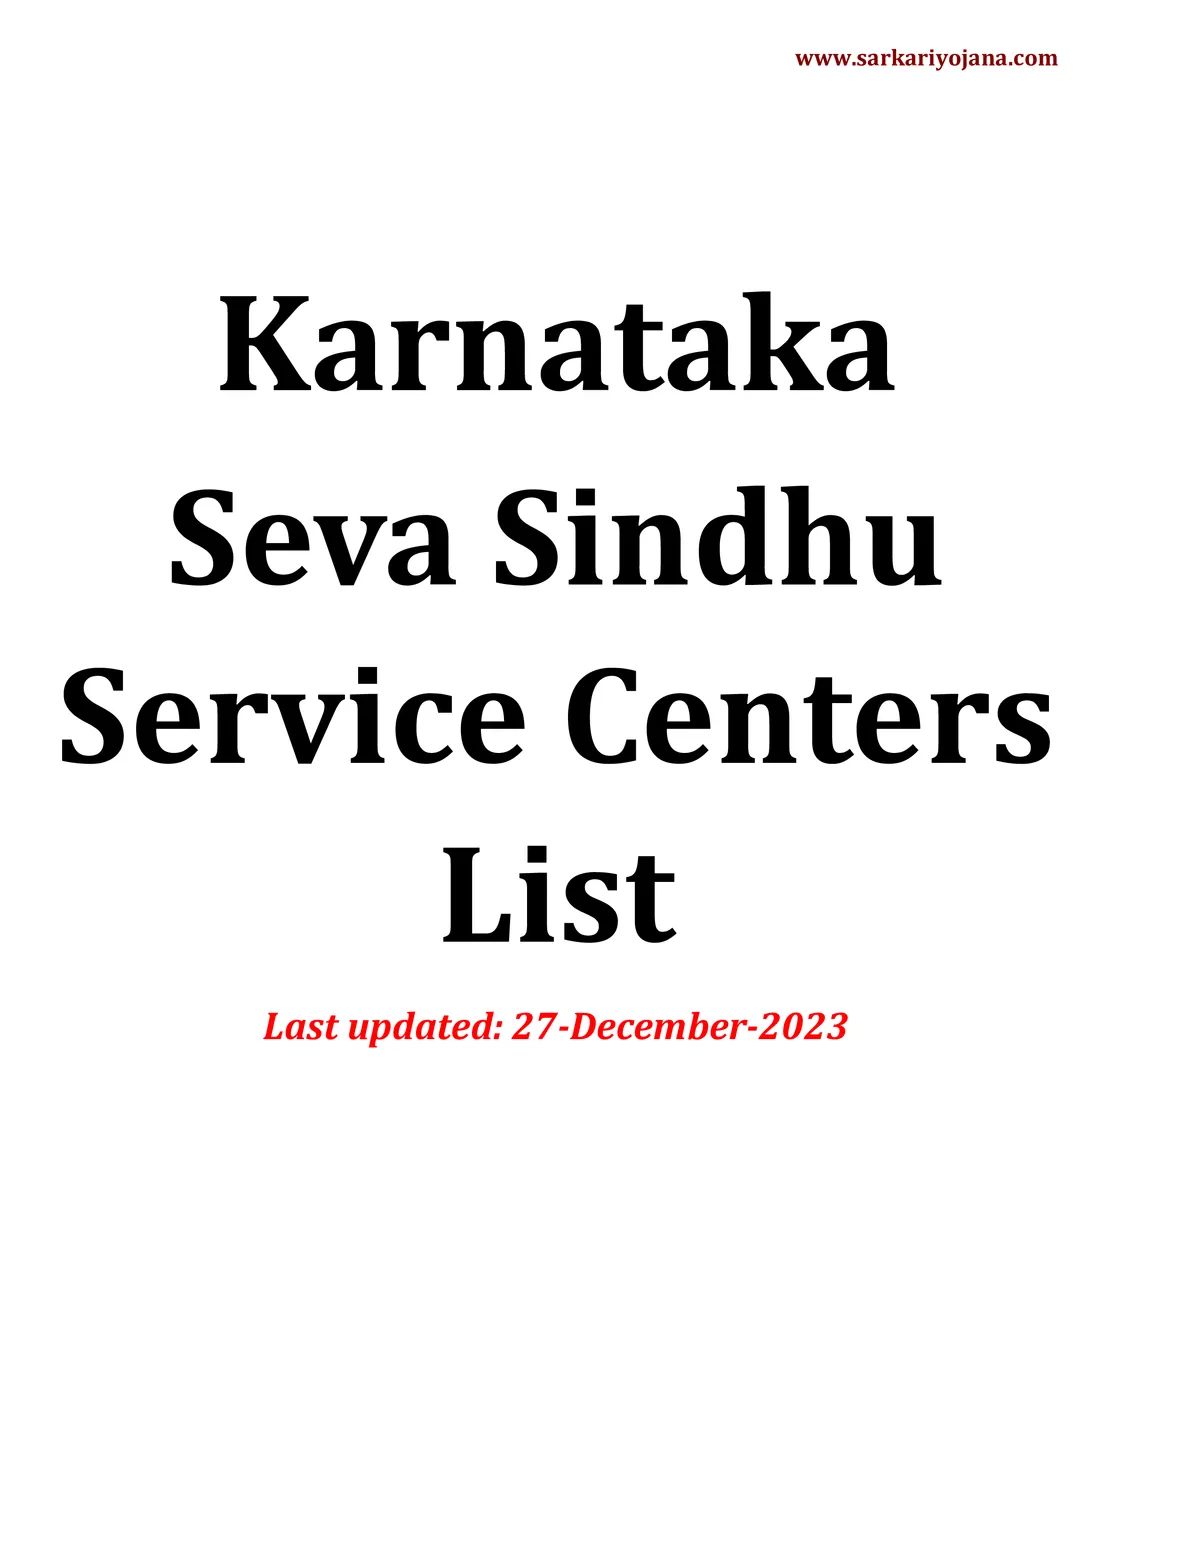 Karnataka Seva Sindhu Service Centers List PDF